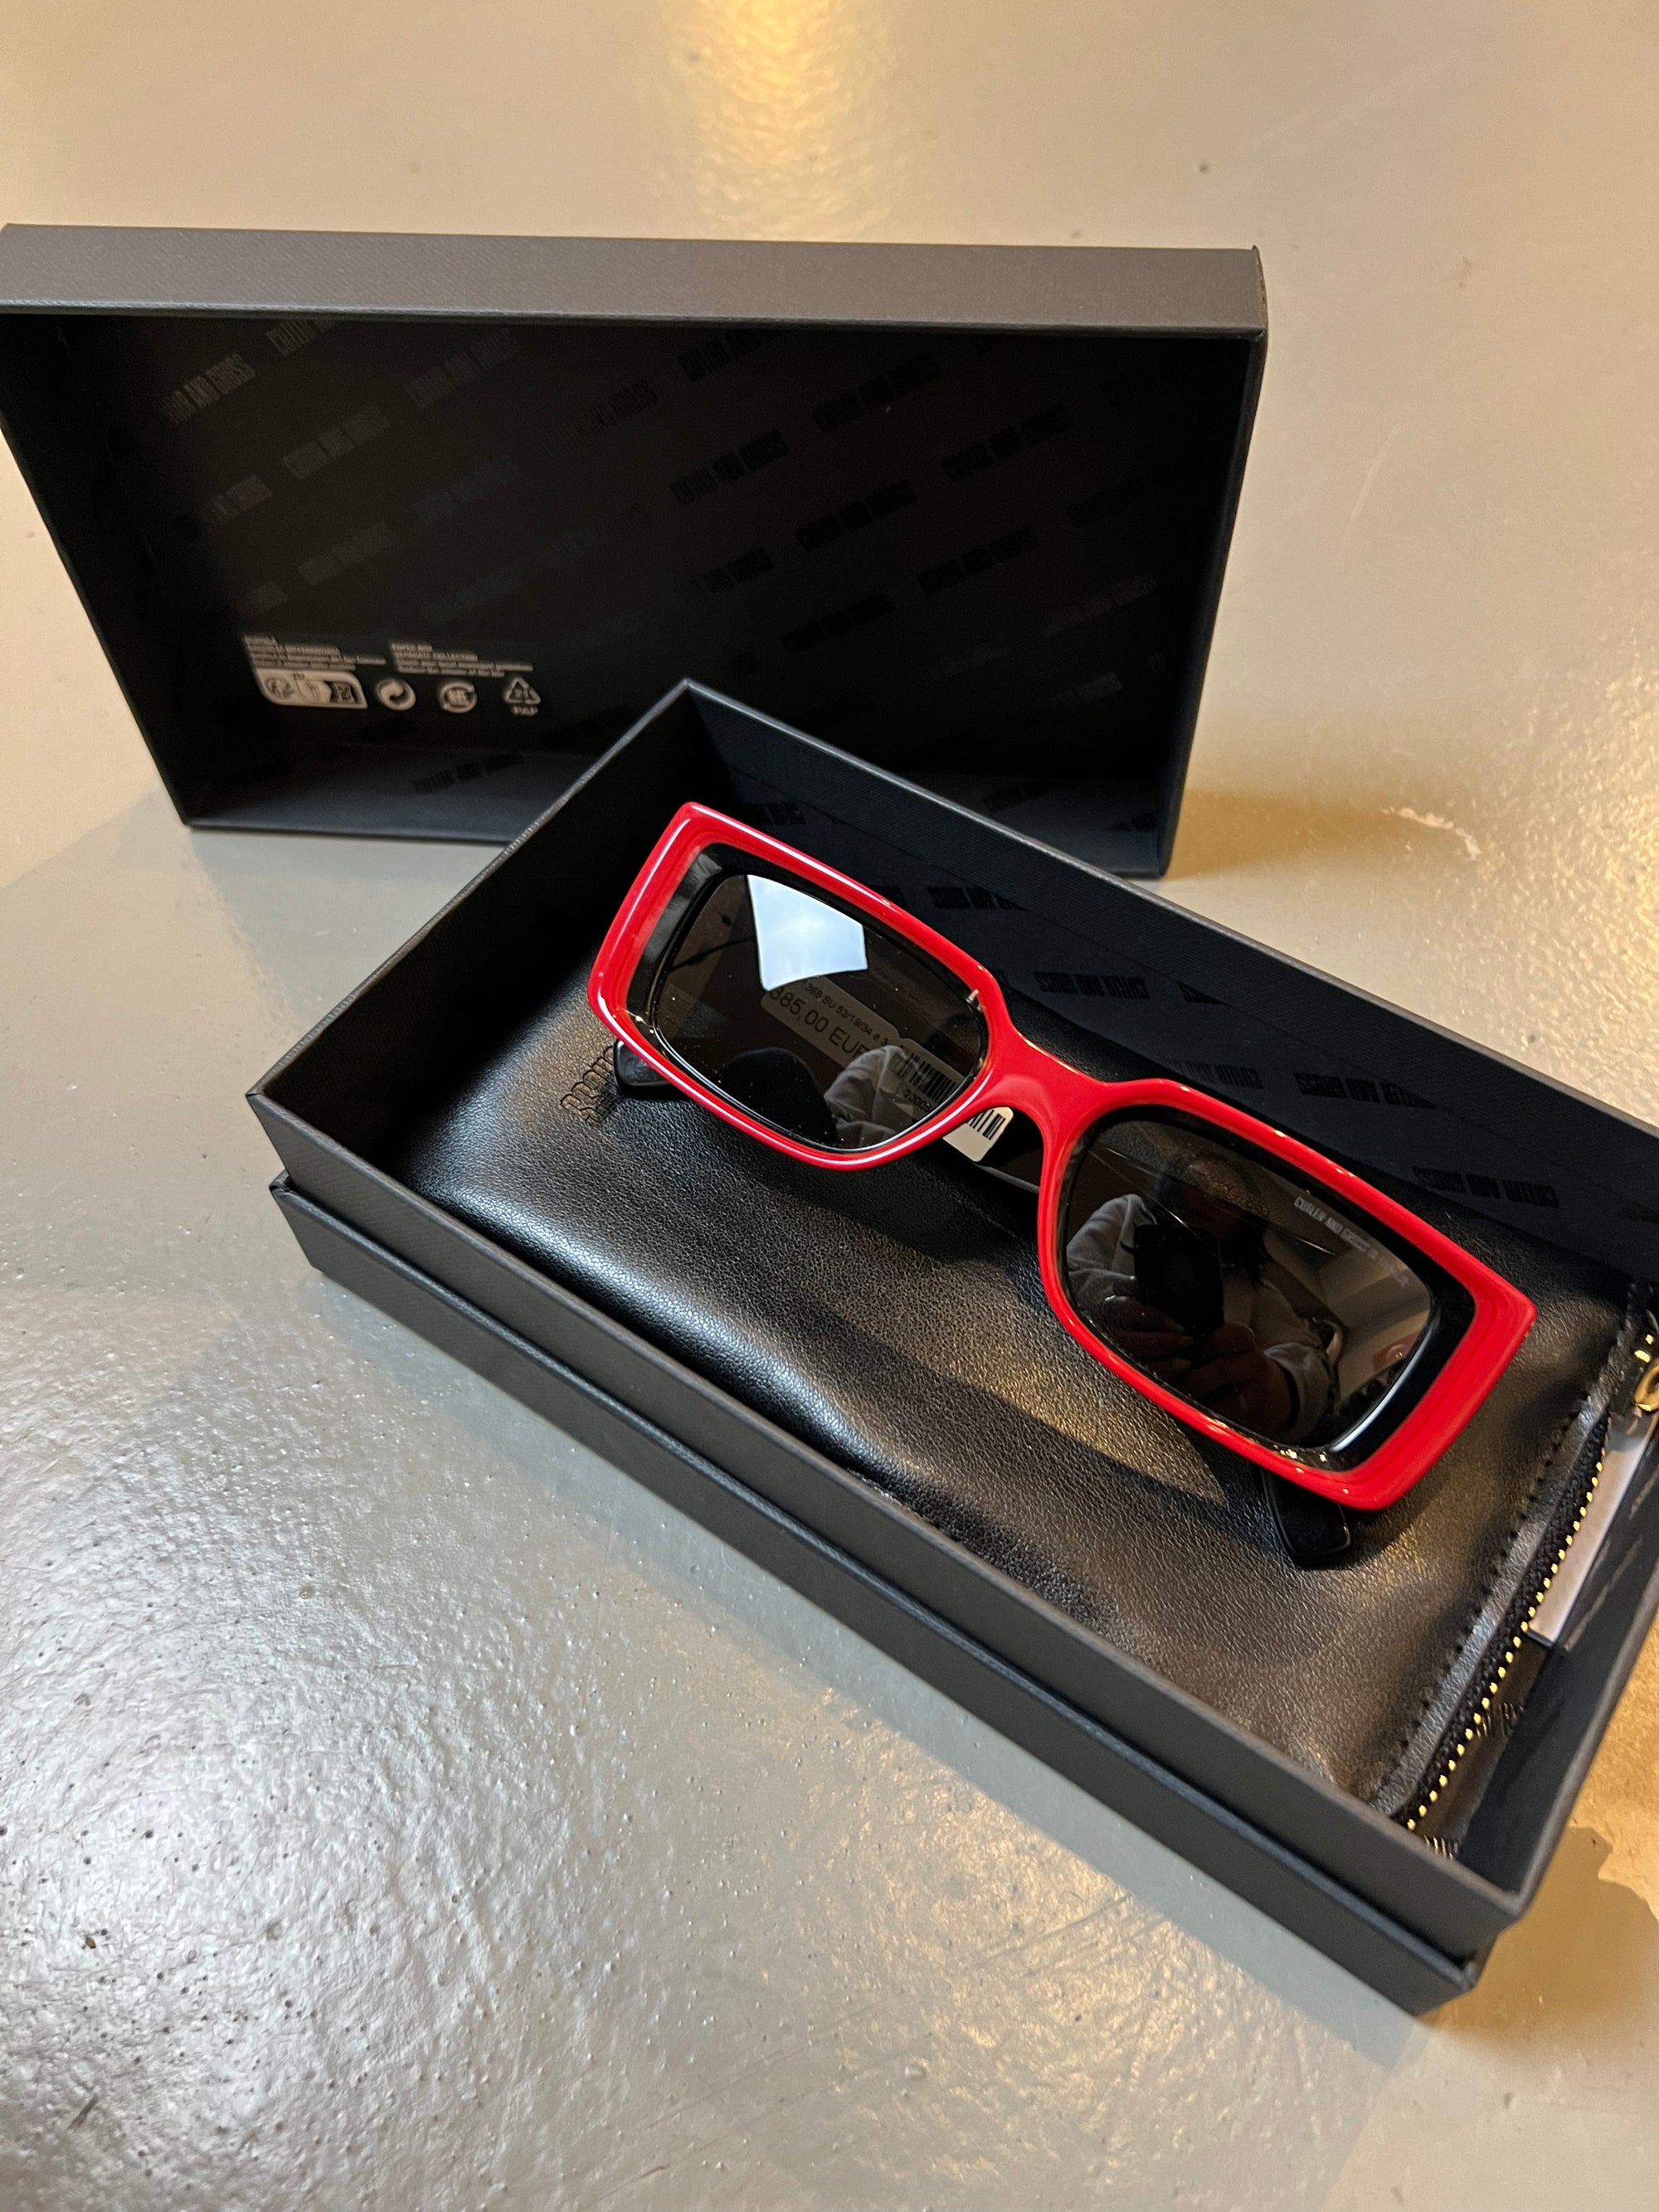 Produktbild der Vintage Red Cutler Sonnenbrille mit großen Gläsern von Oben mit Etui.